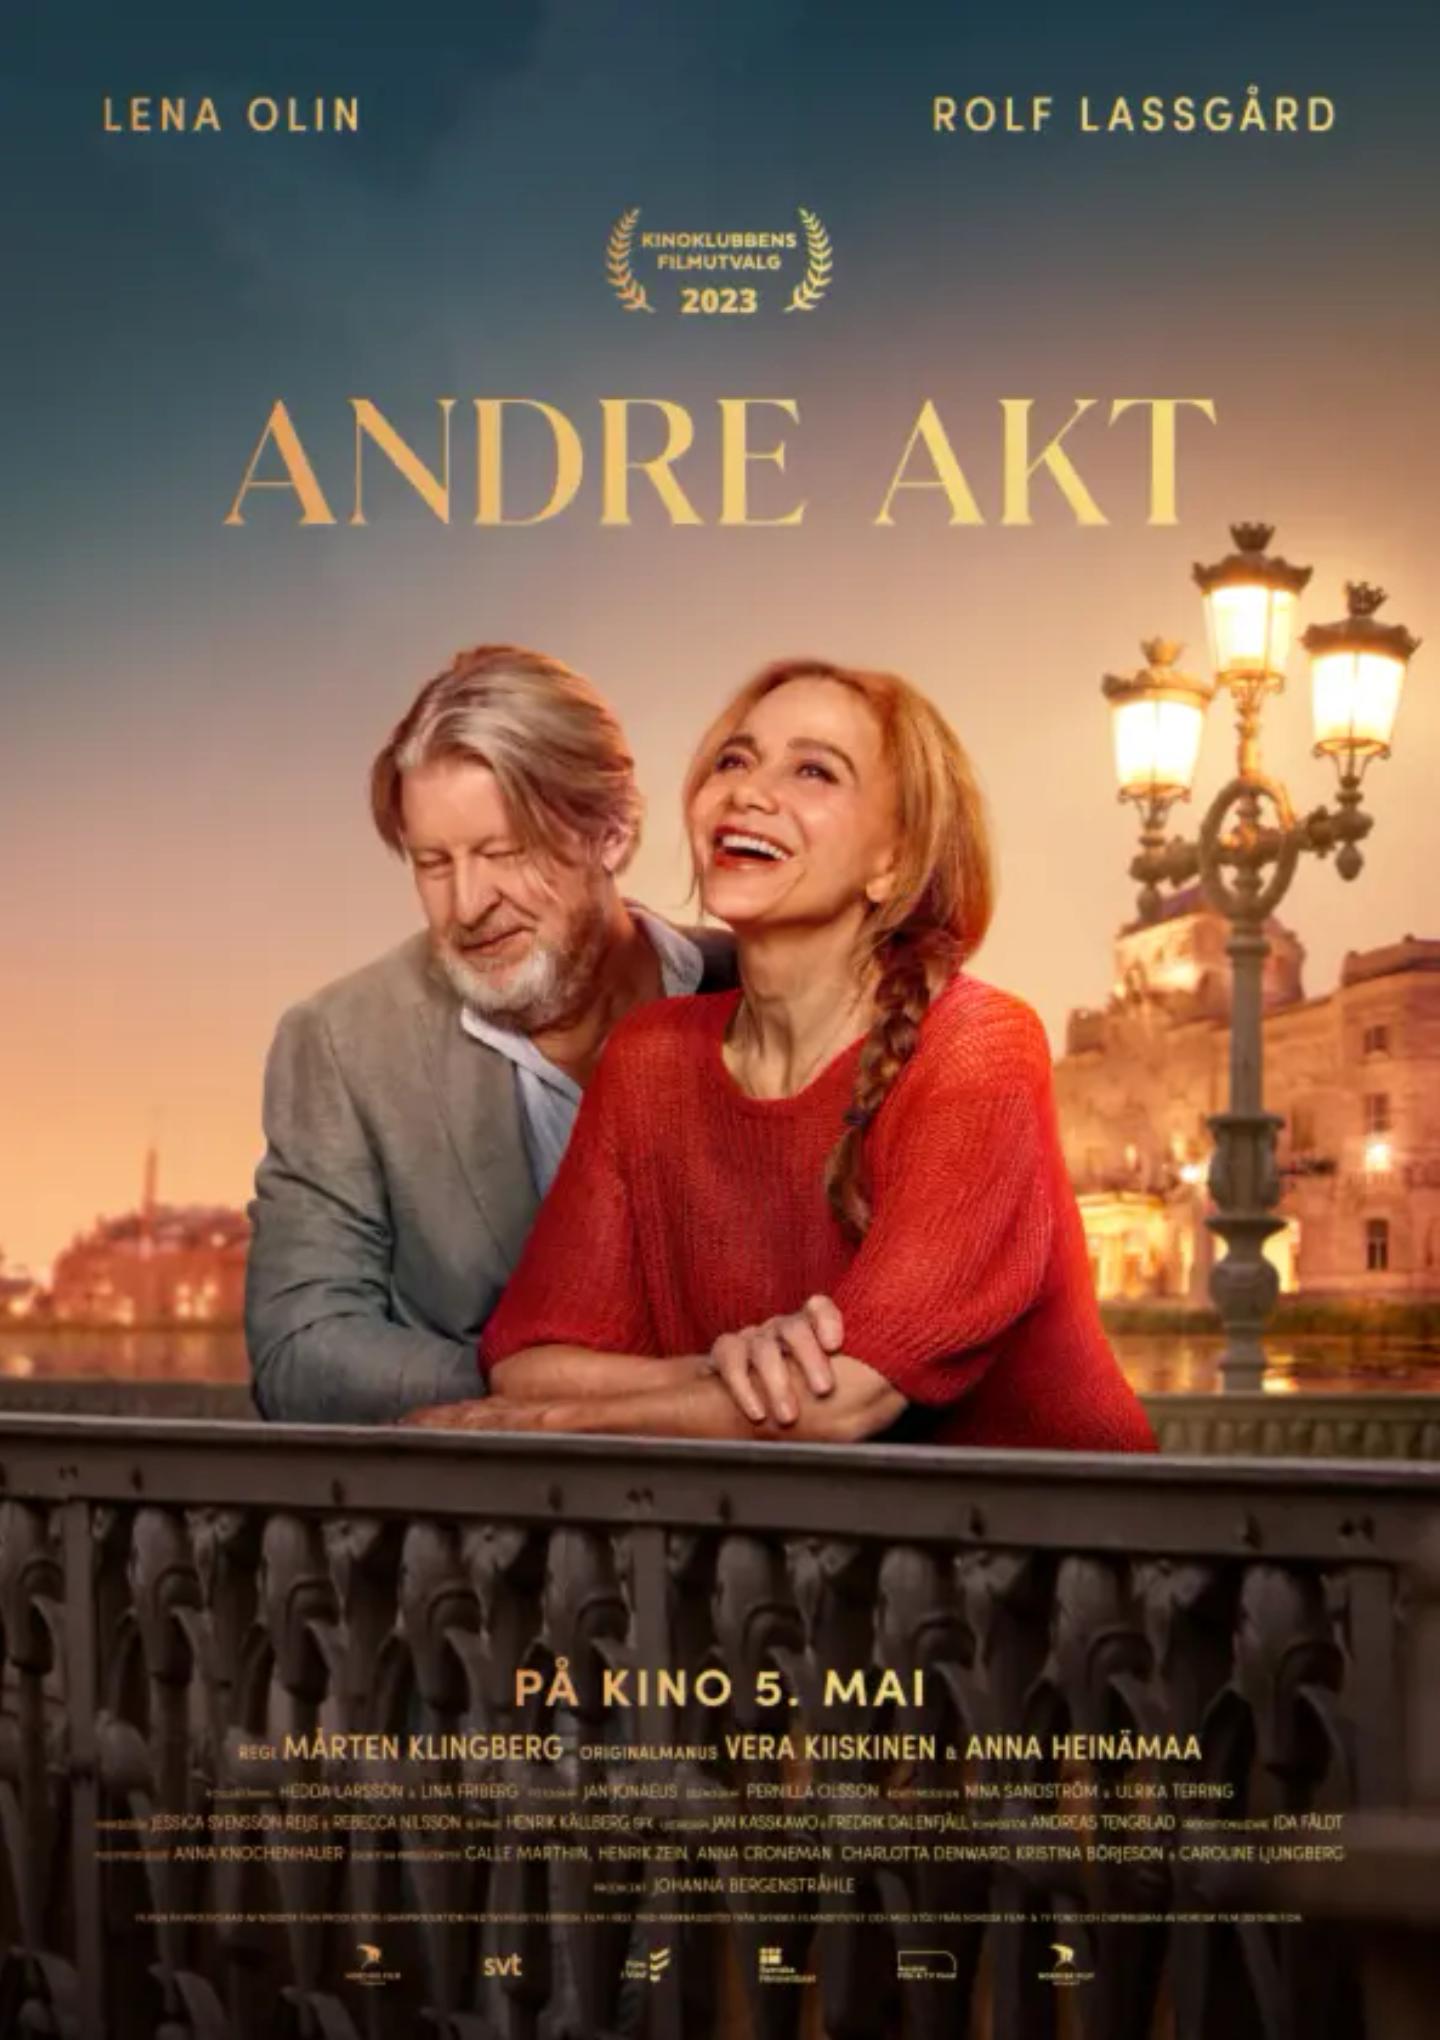 Plakat for 'Andre akt'